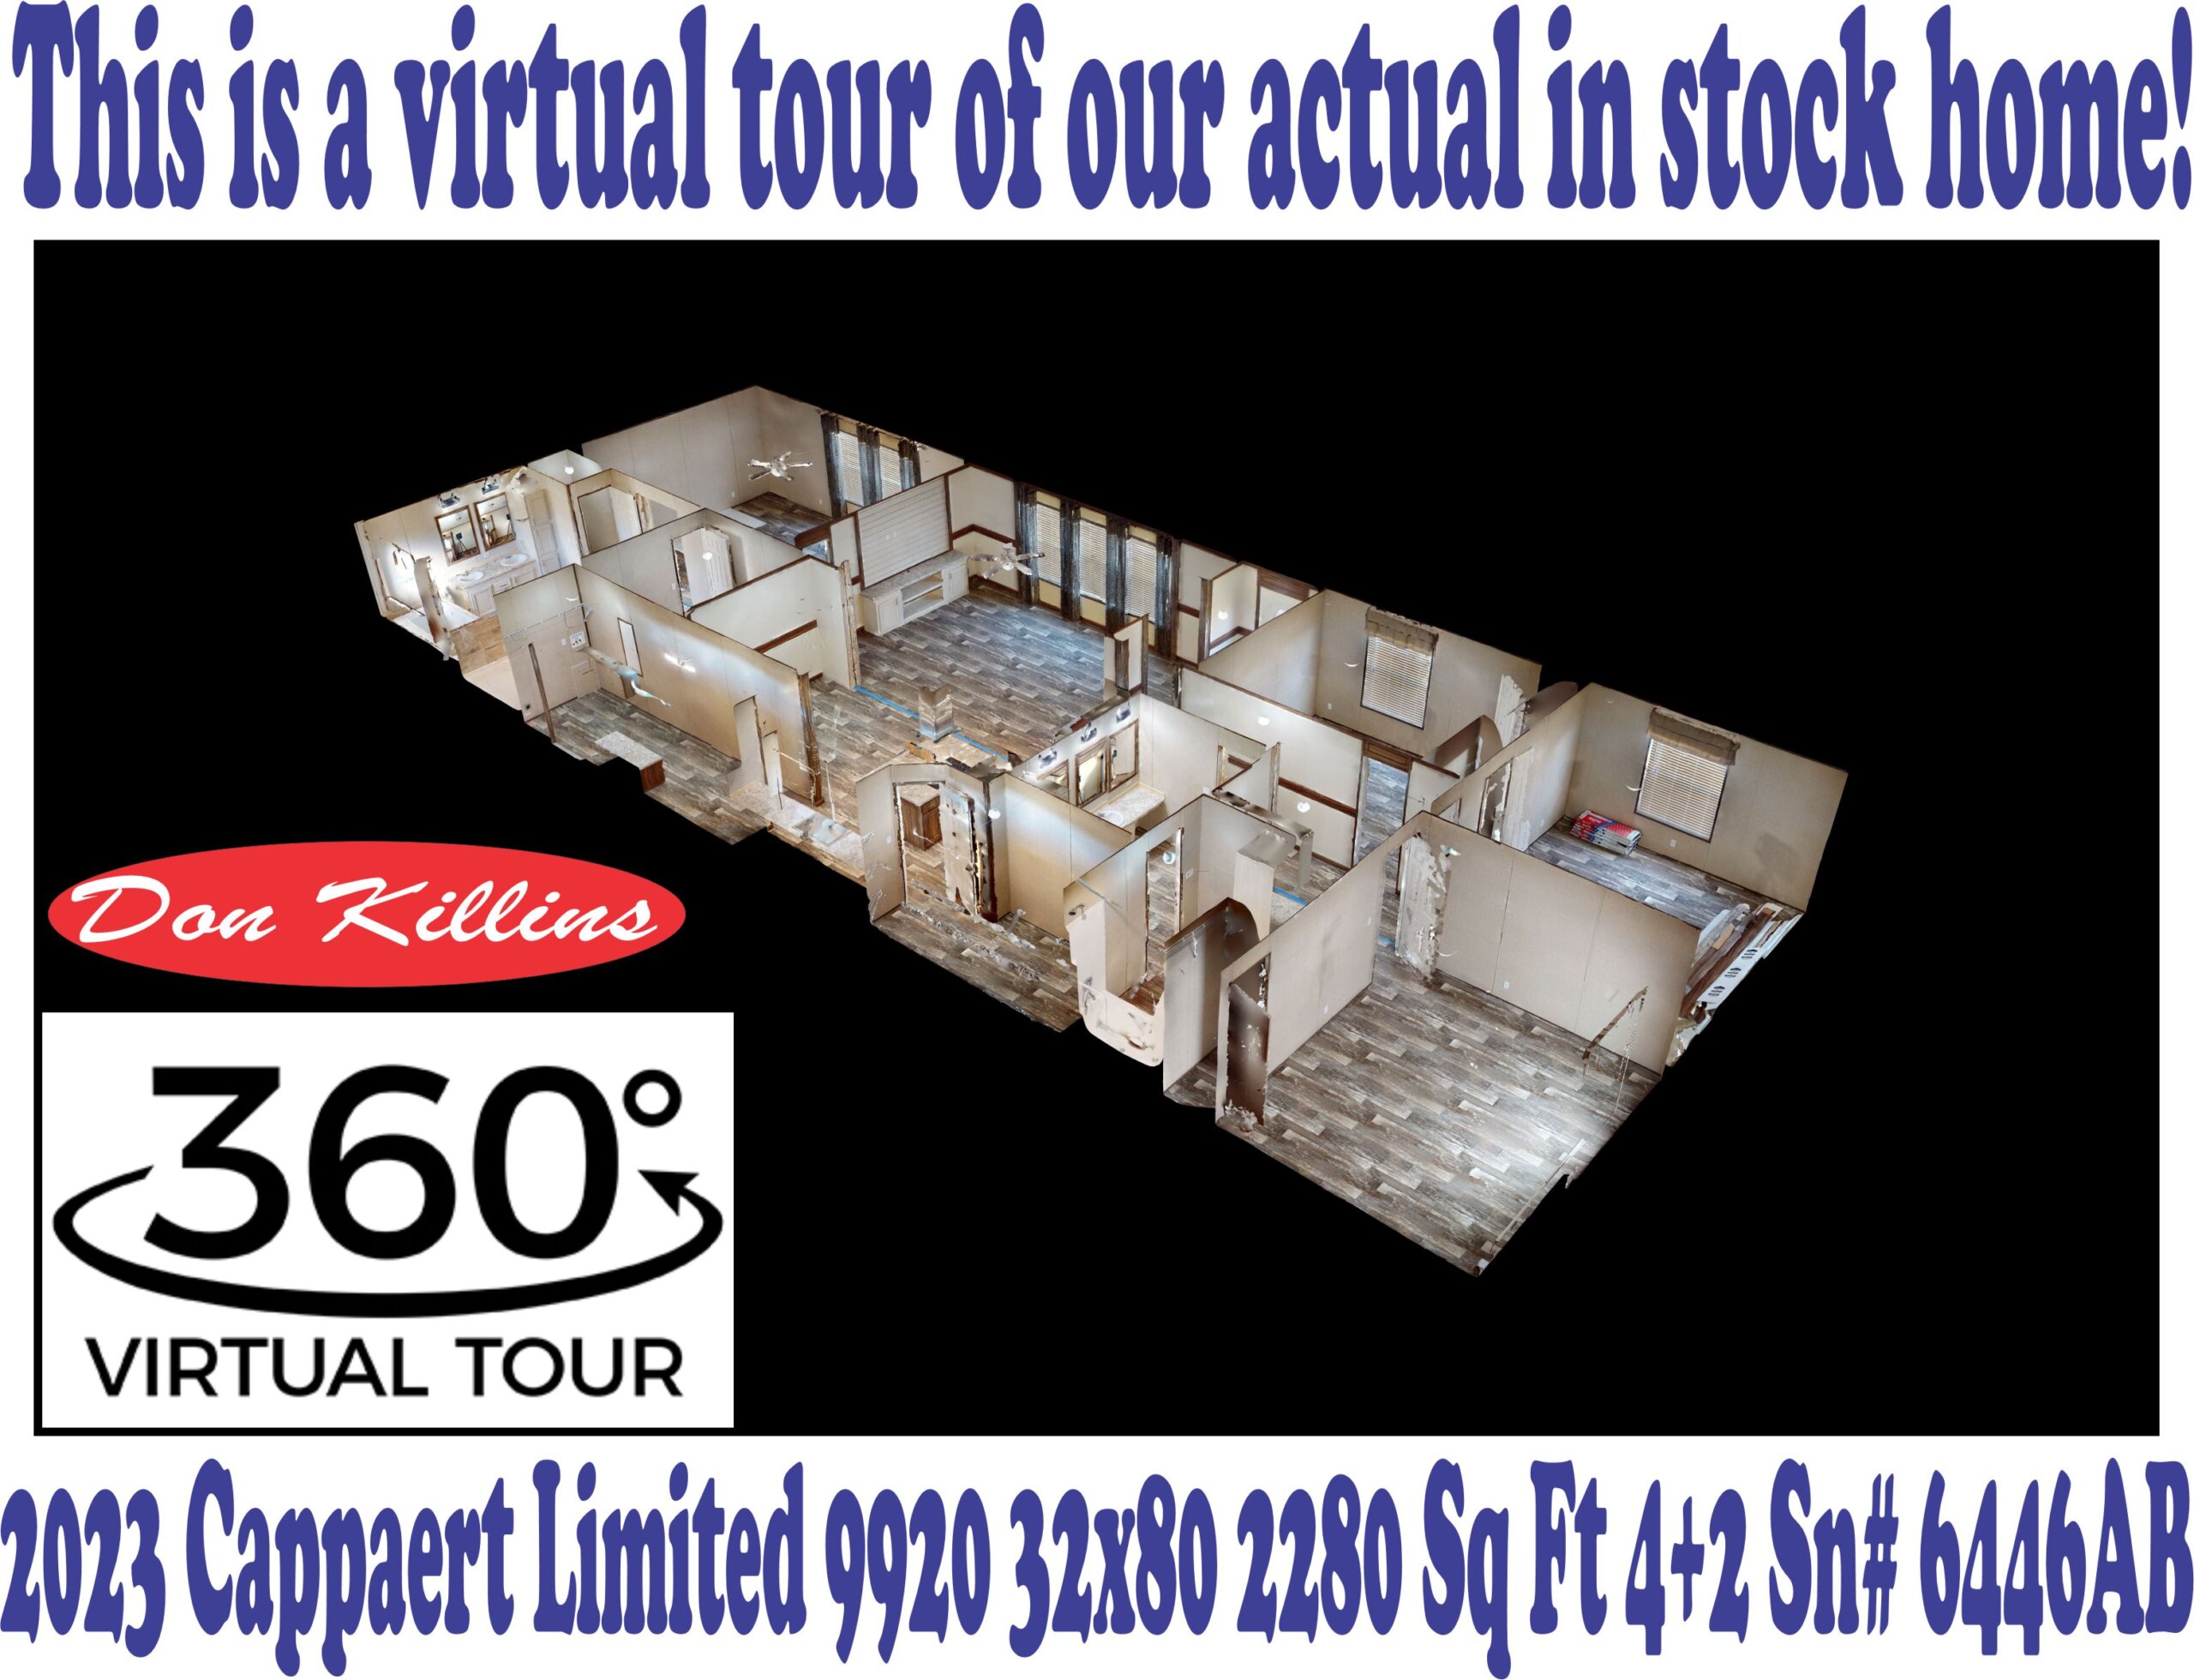 Dollhouse Virtual Tour Sn# 6446AB